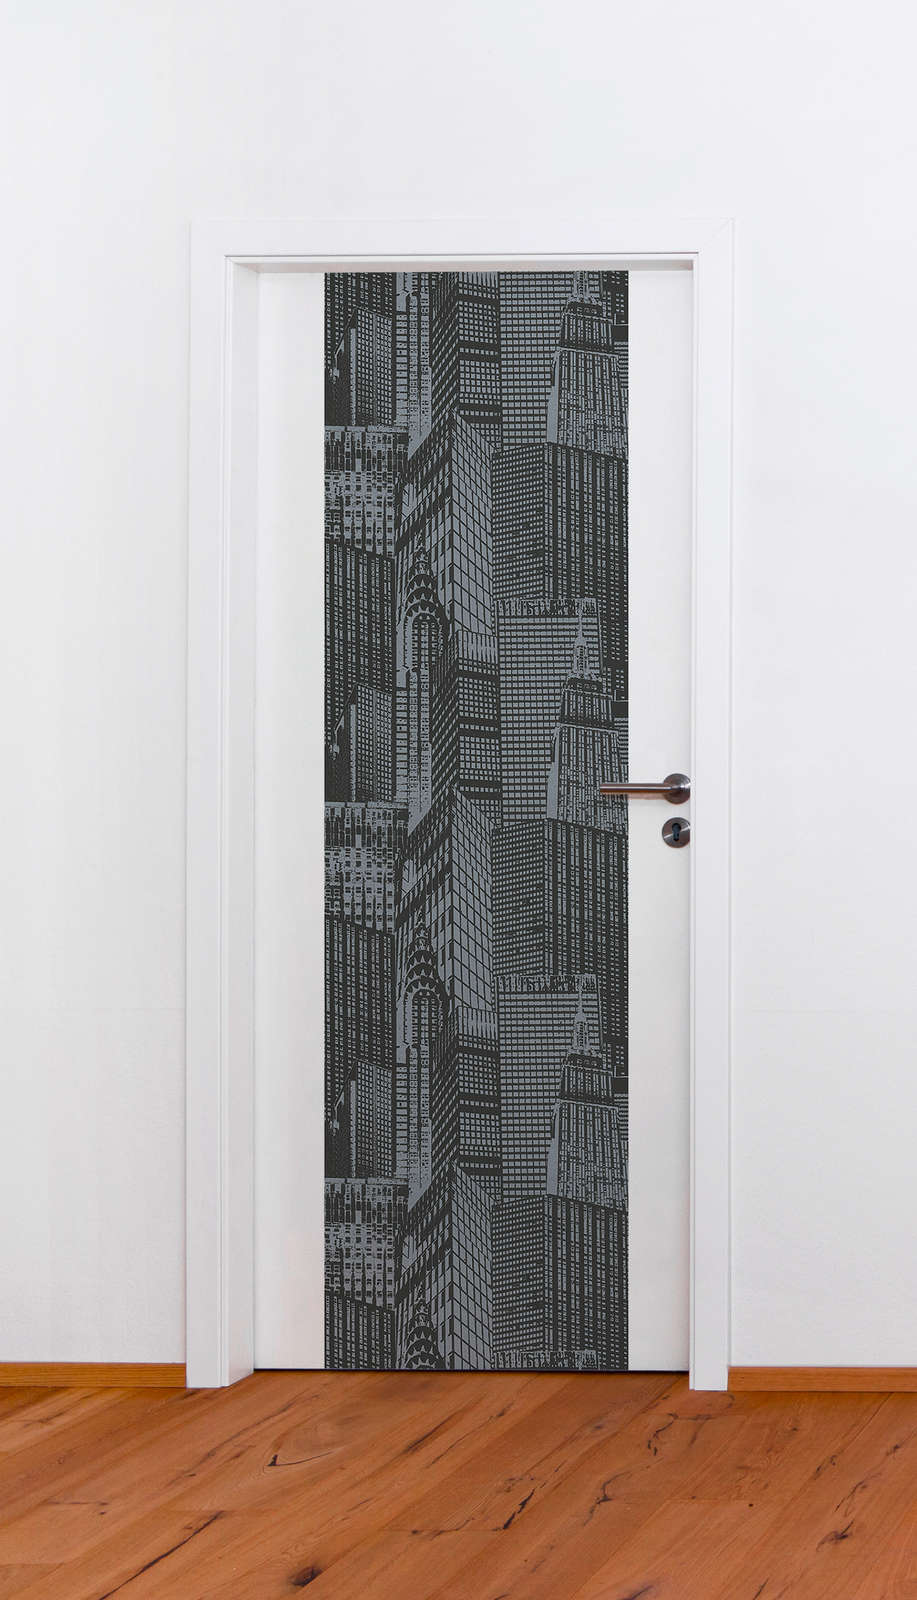             Behangpaneel New York skyline zelfklevend - grijs, zwart
        